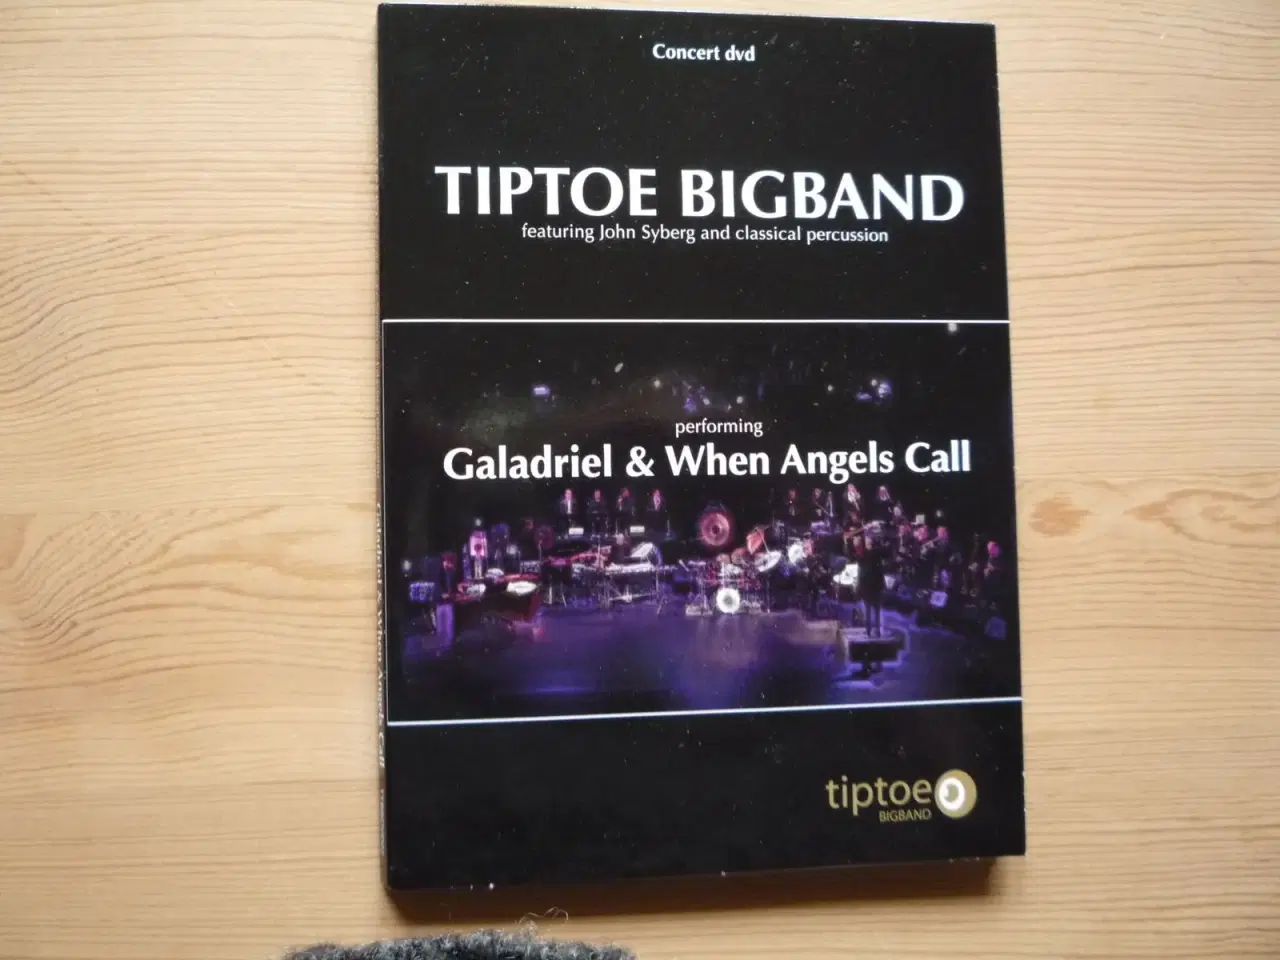 Billede 1 - Concert dvd med Tiptoe Bigband